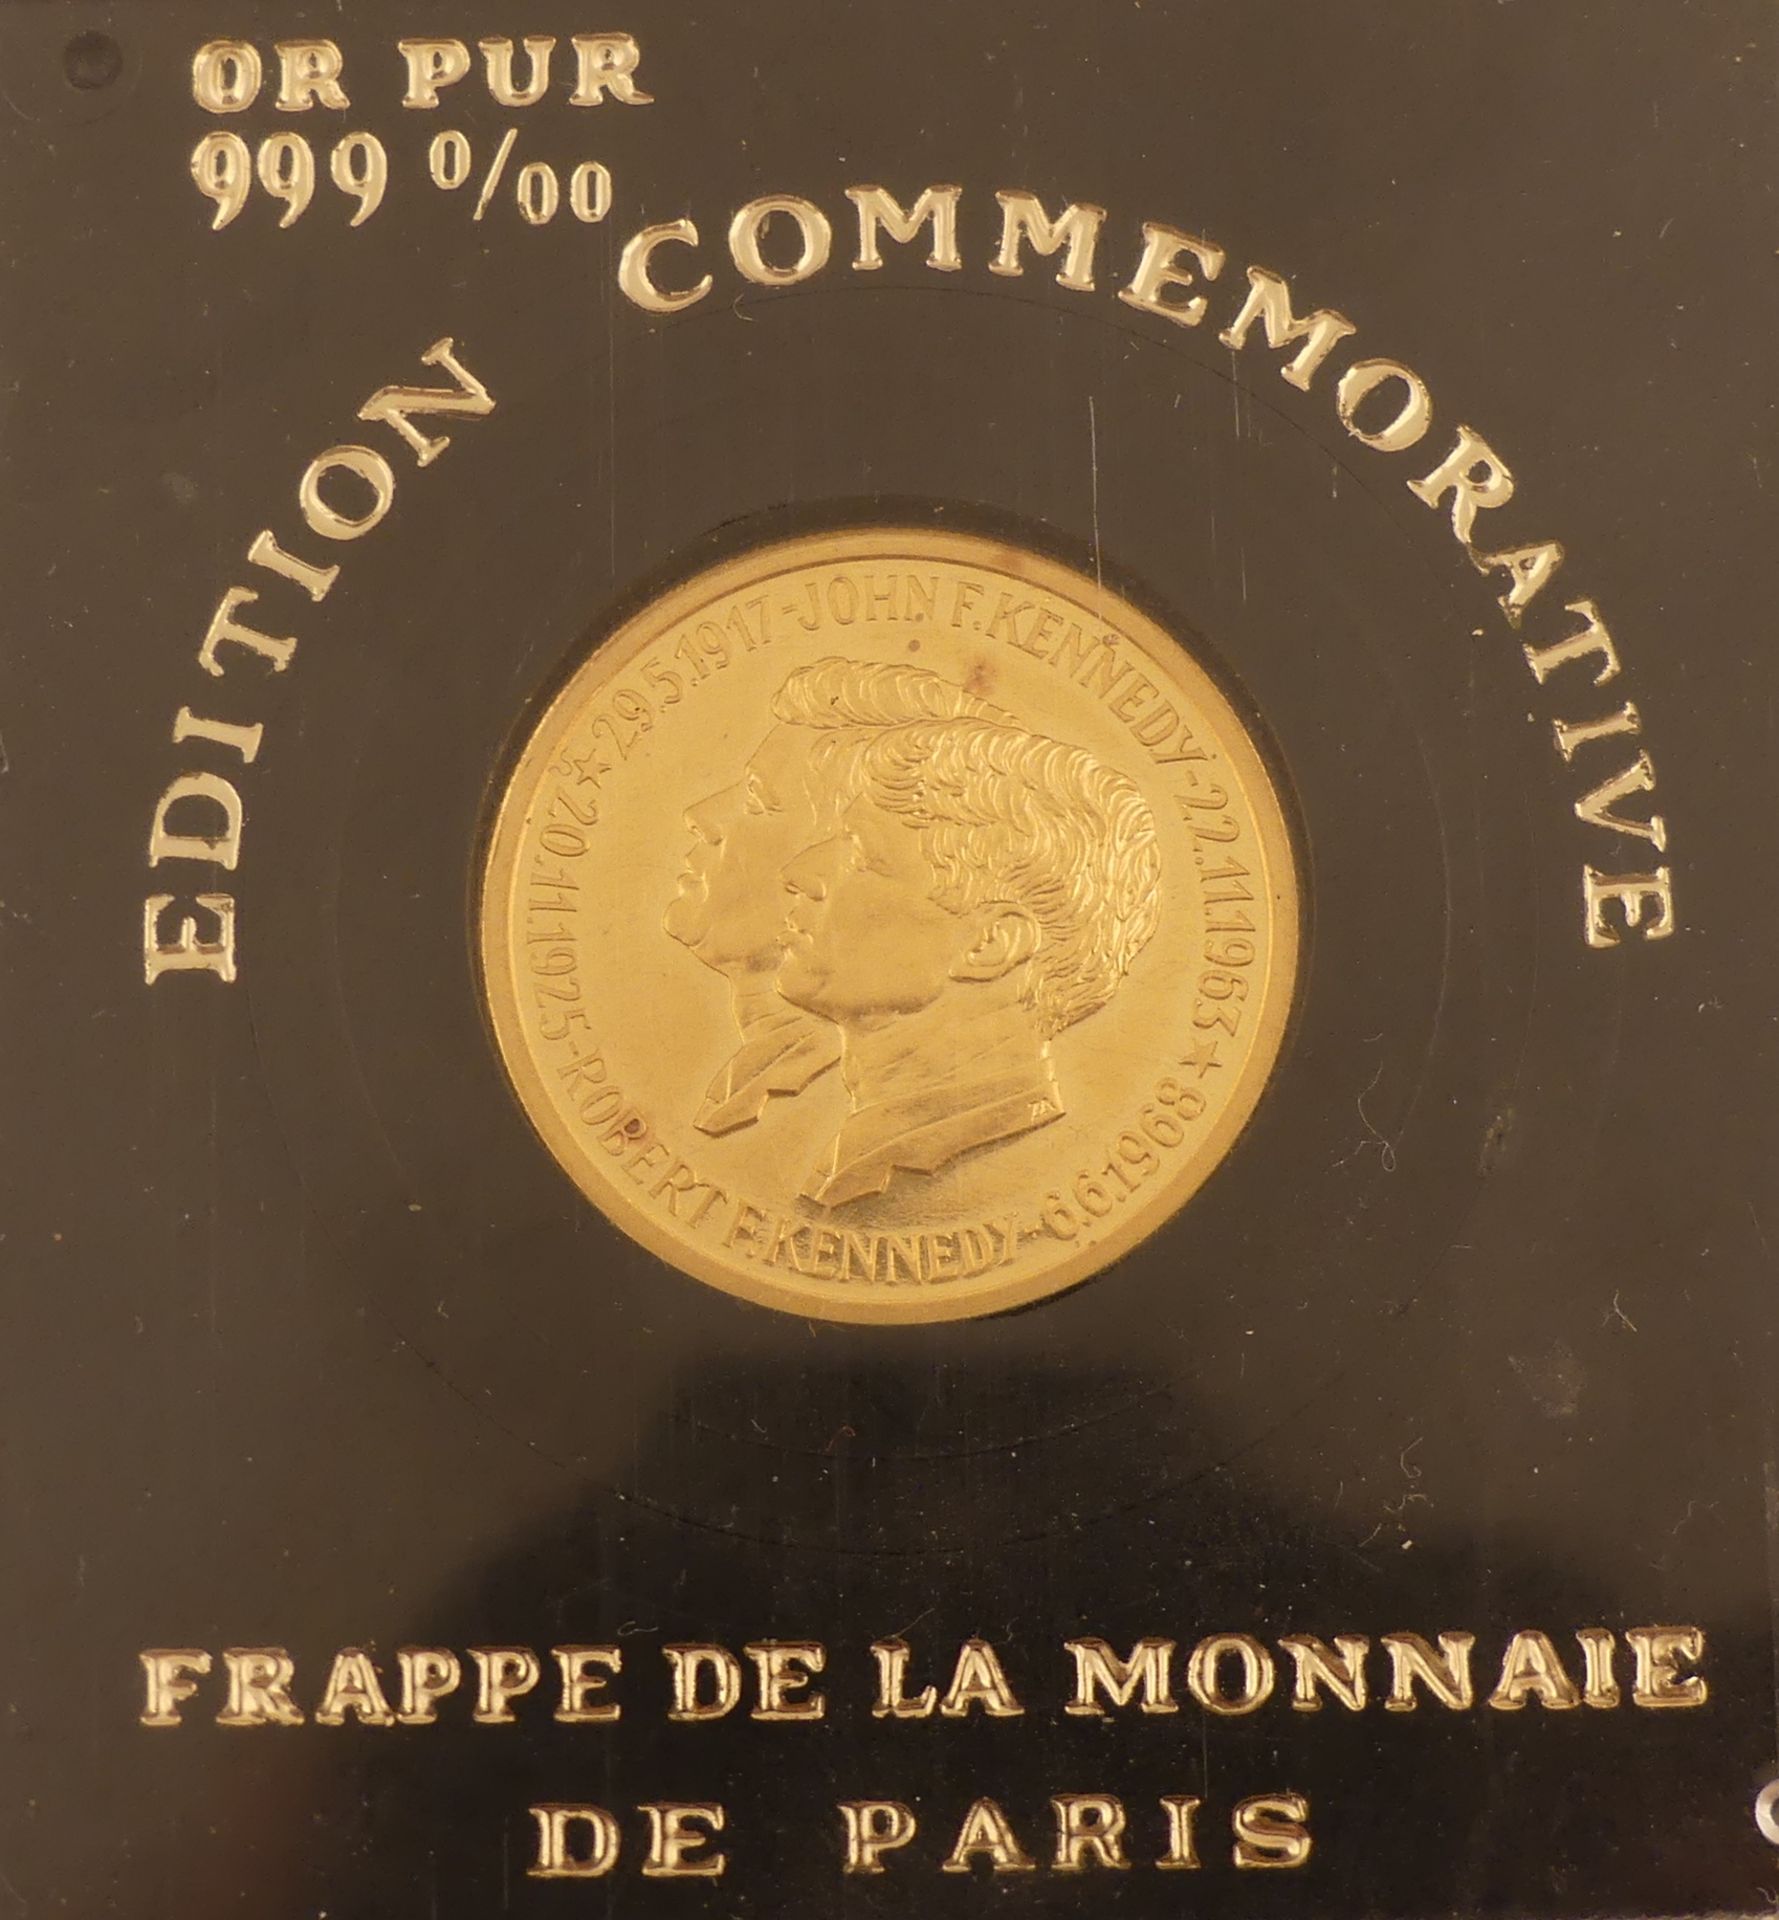 Médaille en or 999 0/00 aux effigies de John et Robert Kennedy. Monnaie de Paris. [...]